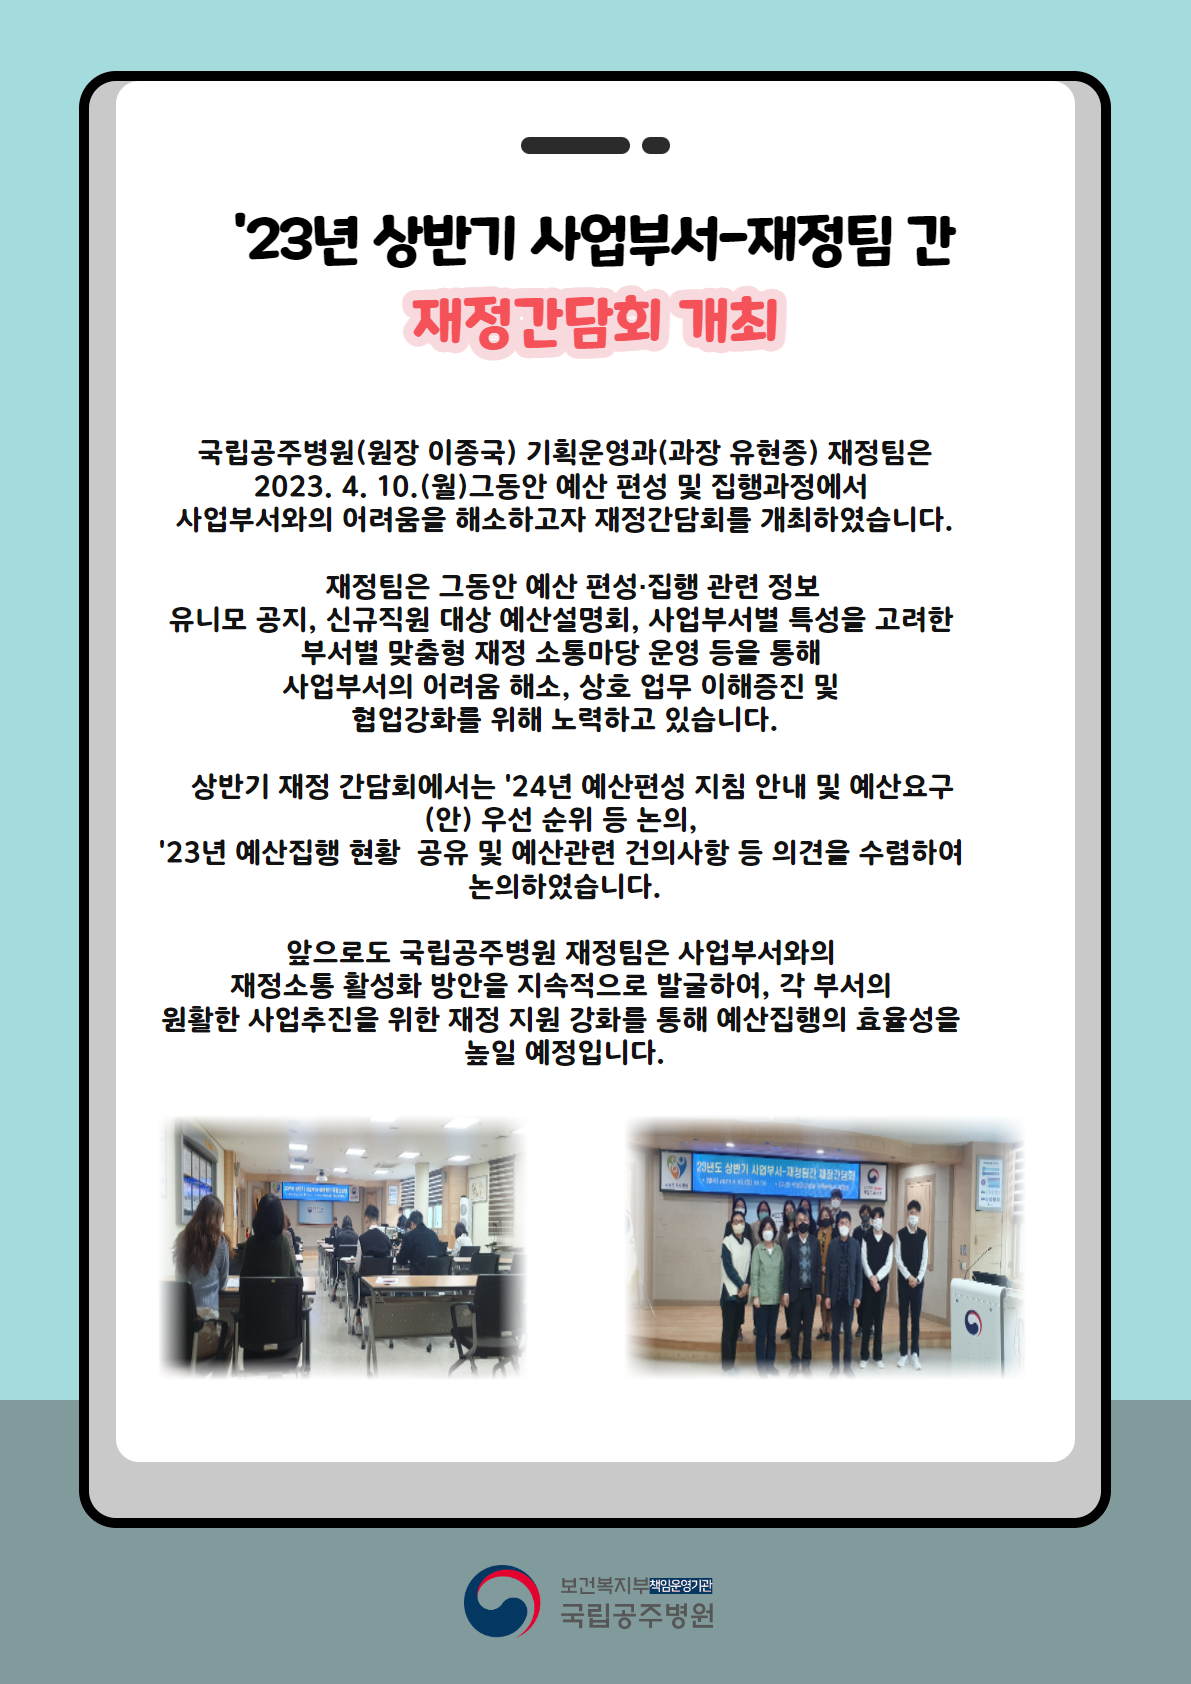 23년 상반기 사업부서-재정팀 간 재정간담회 개최